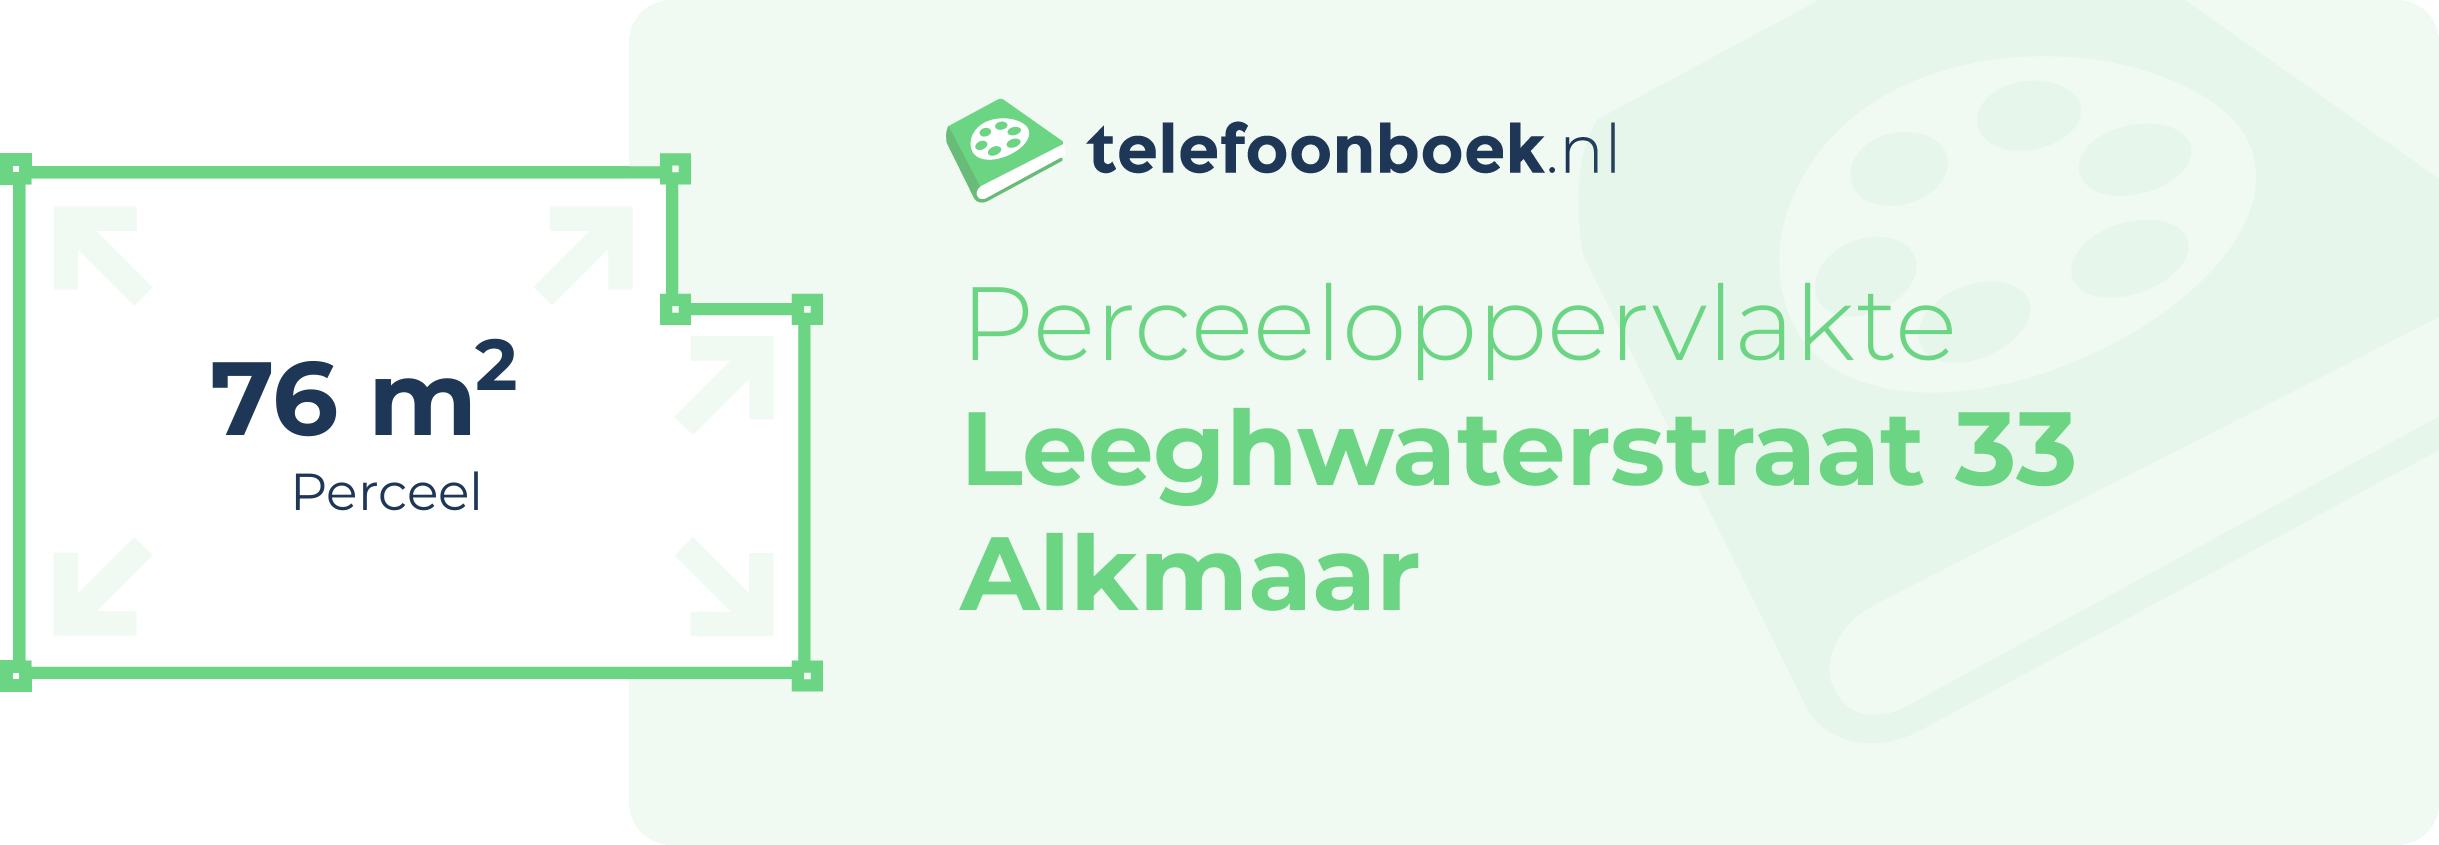 Perceeloppervlakte Leeghwaterstraat 33 Alkmaar